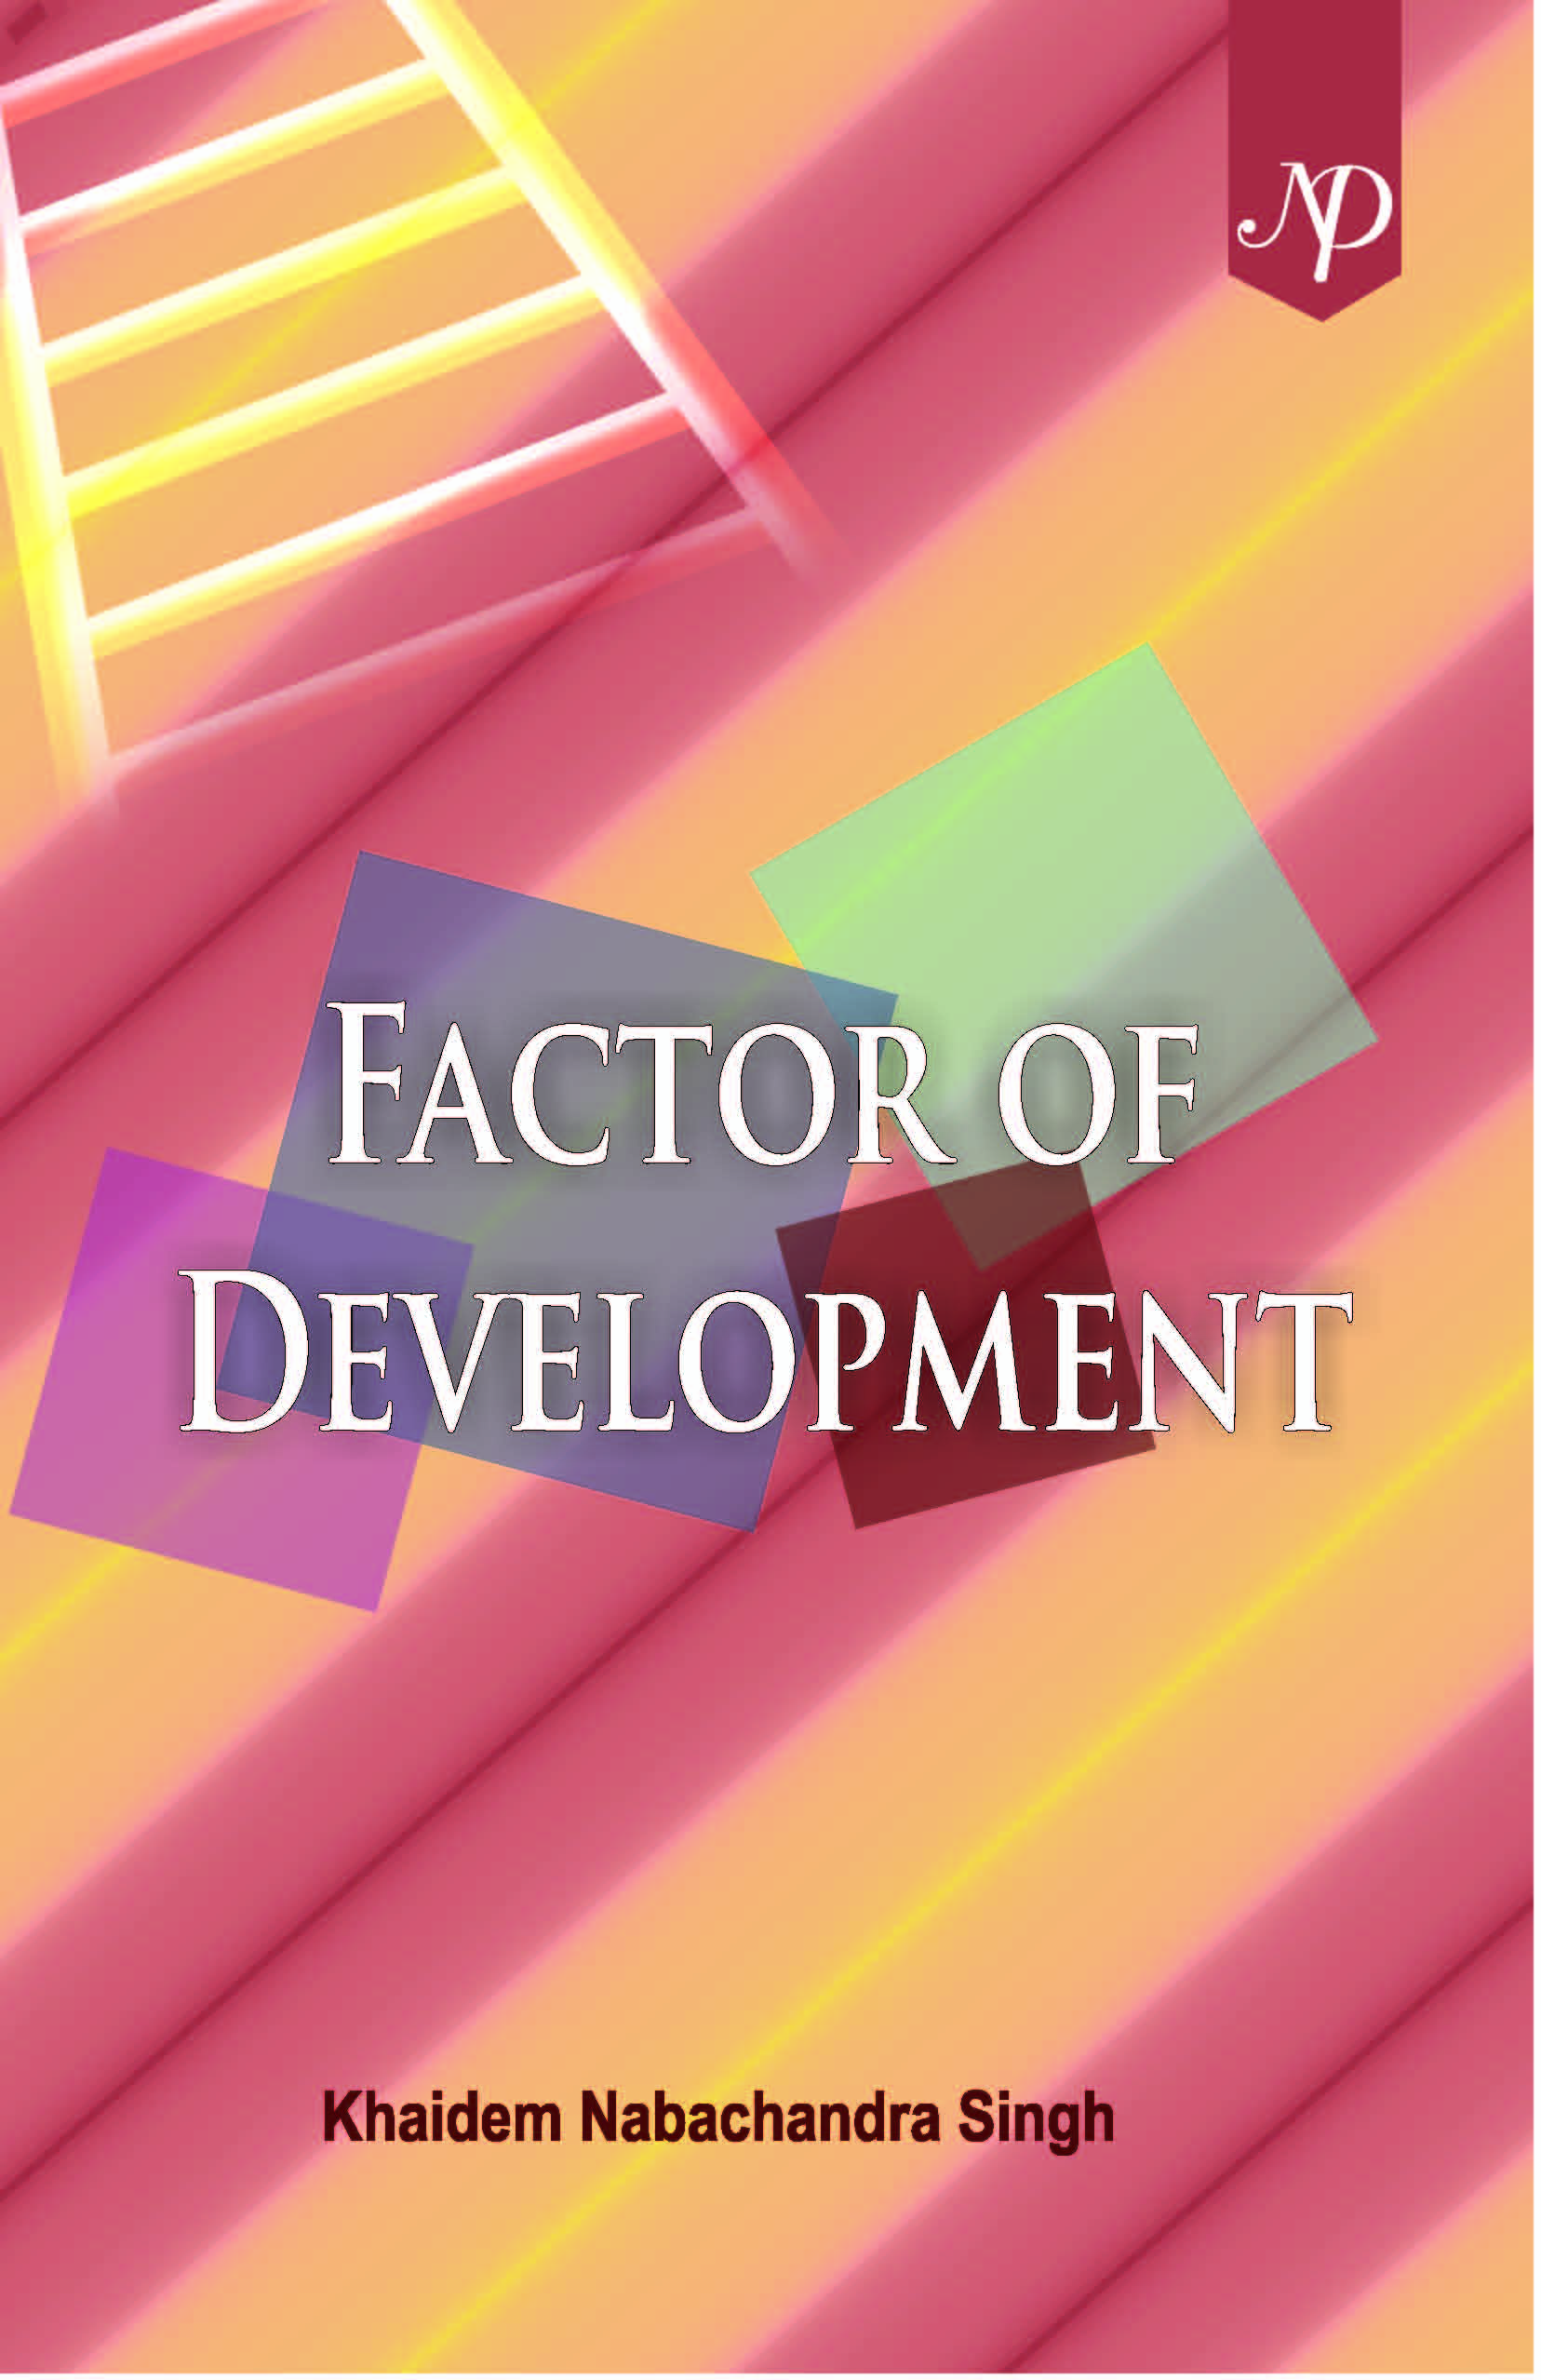 Factor of Development by Amresh Cover.jpg